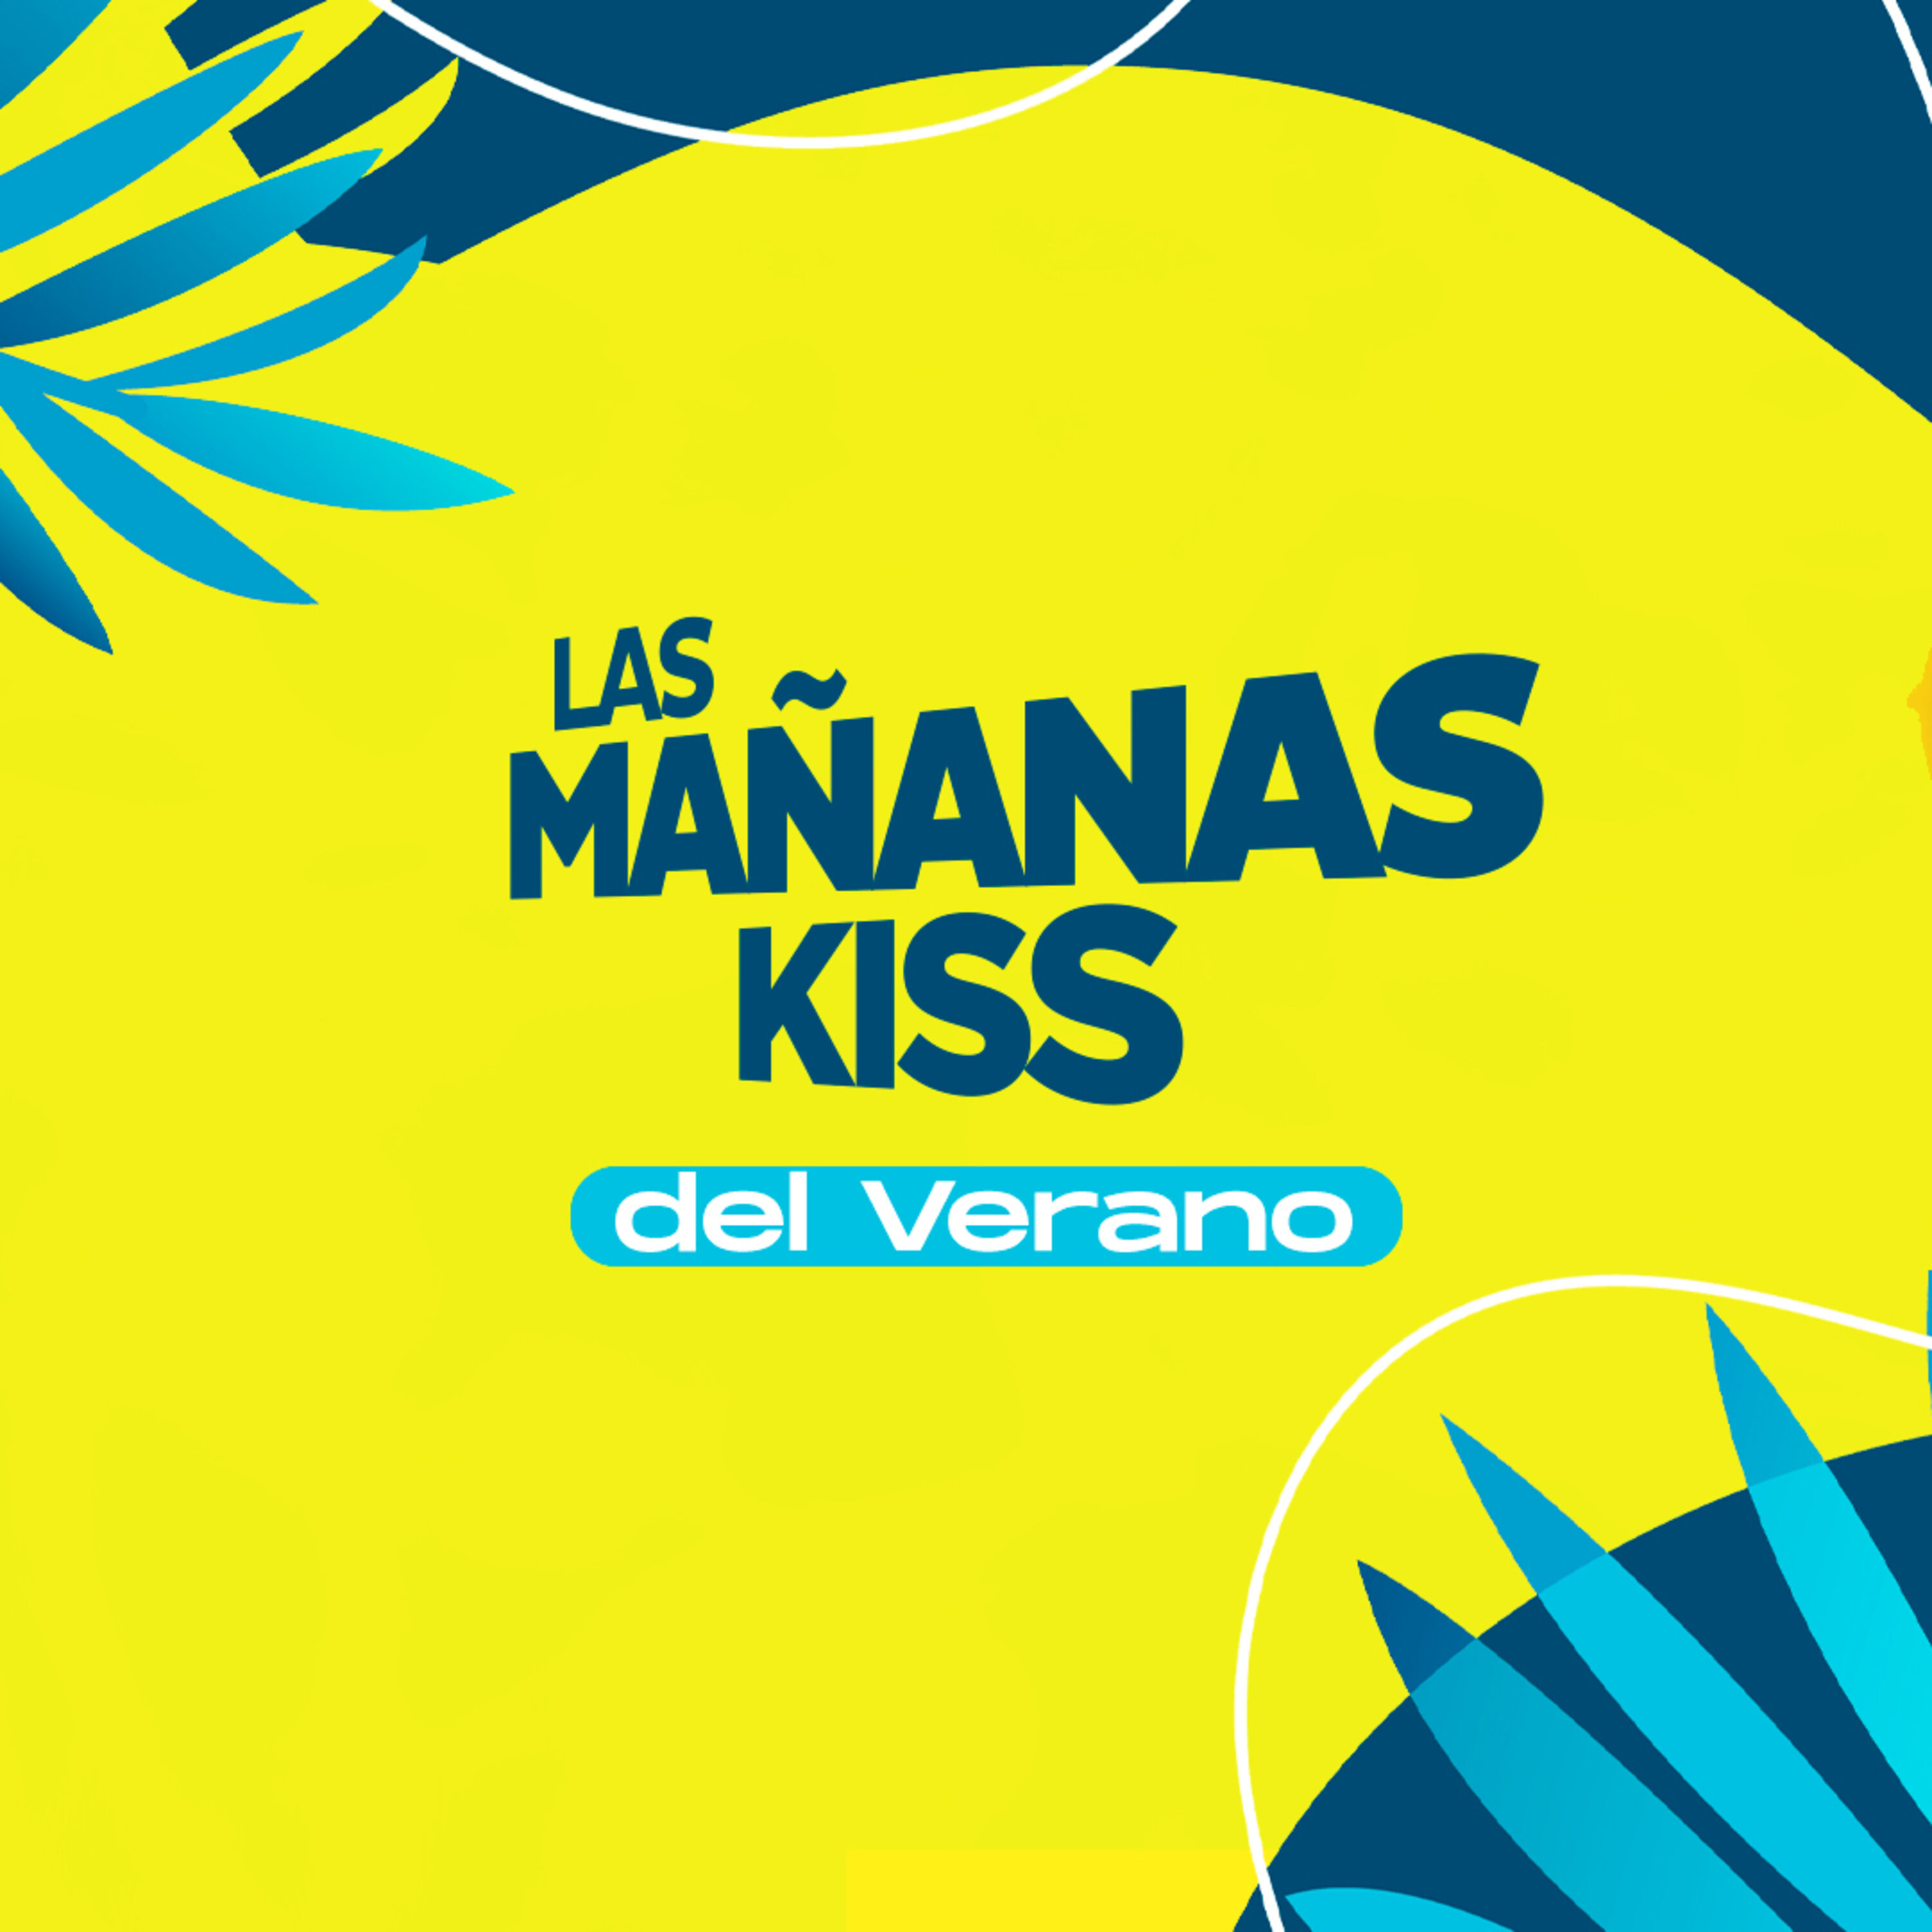 Las Mañanas KISS del Verano (28/07/2022 - 07-08h)